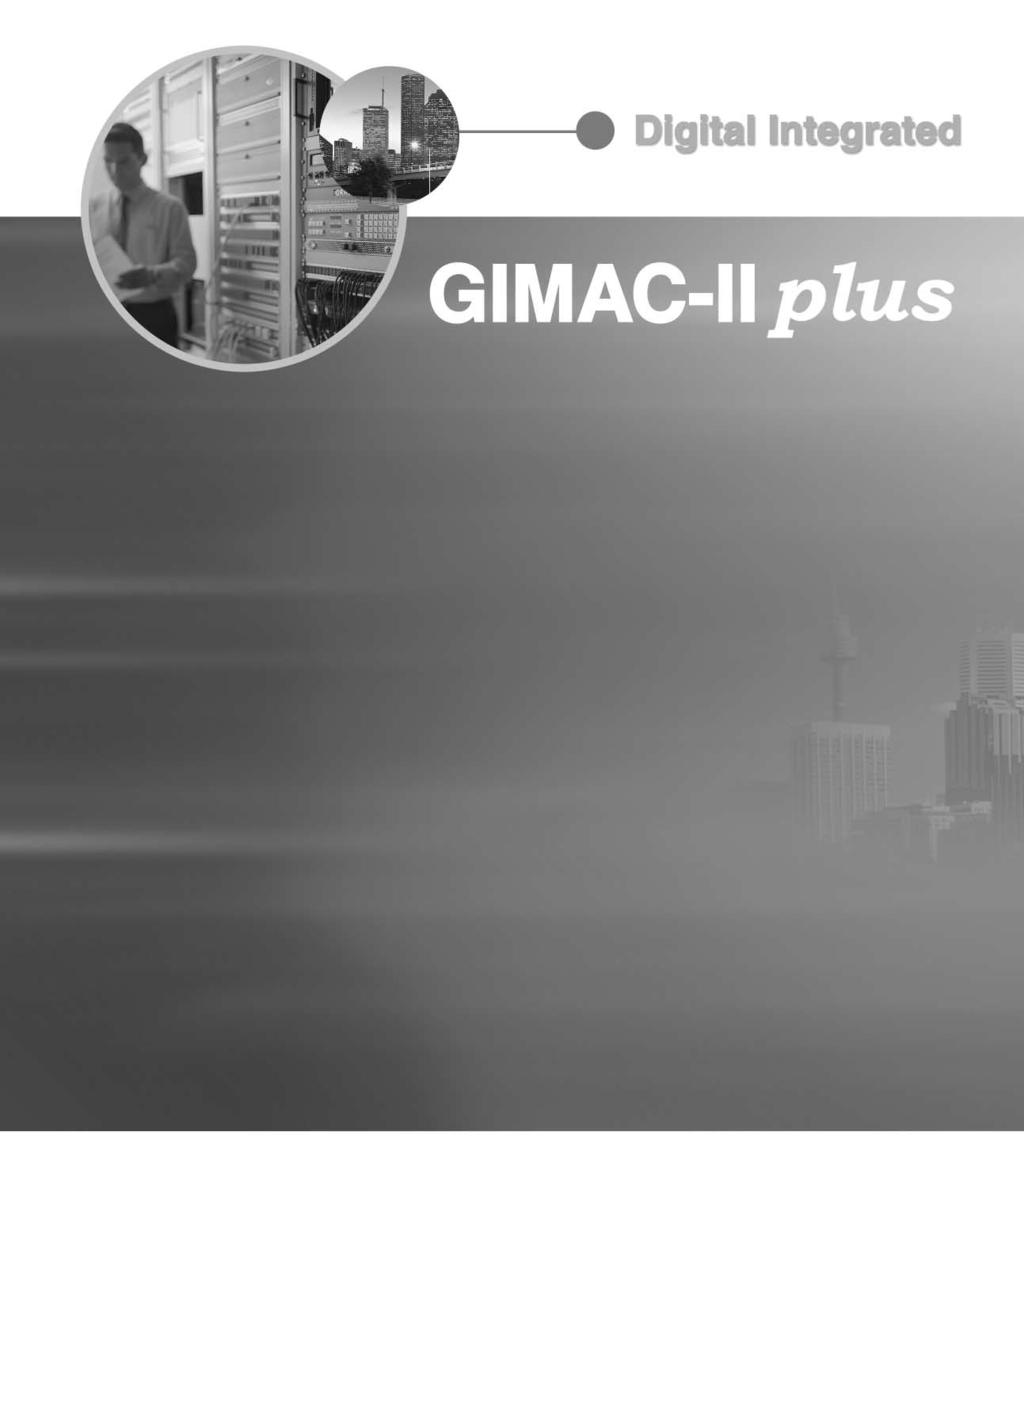 GIMAC-II 는전력계통의각종계측요소및고조파분석, 차단기제어,